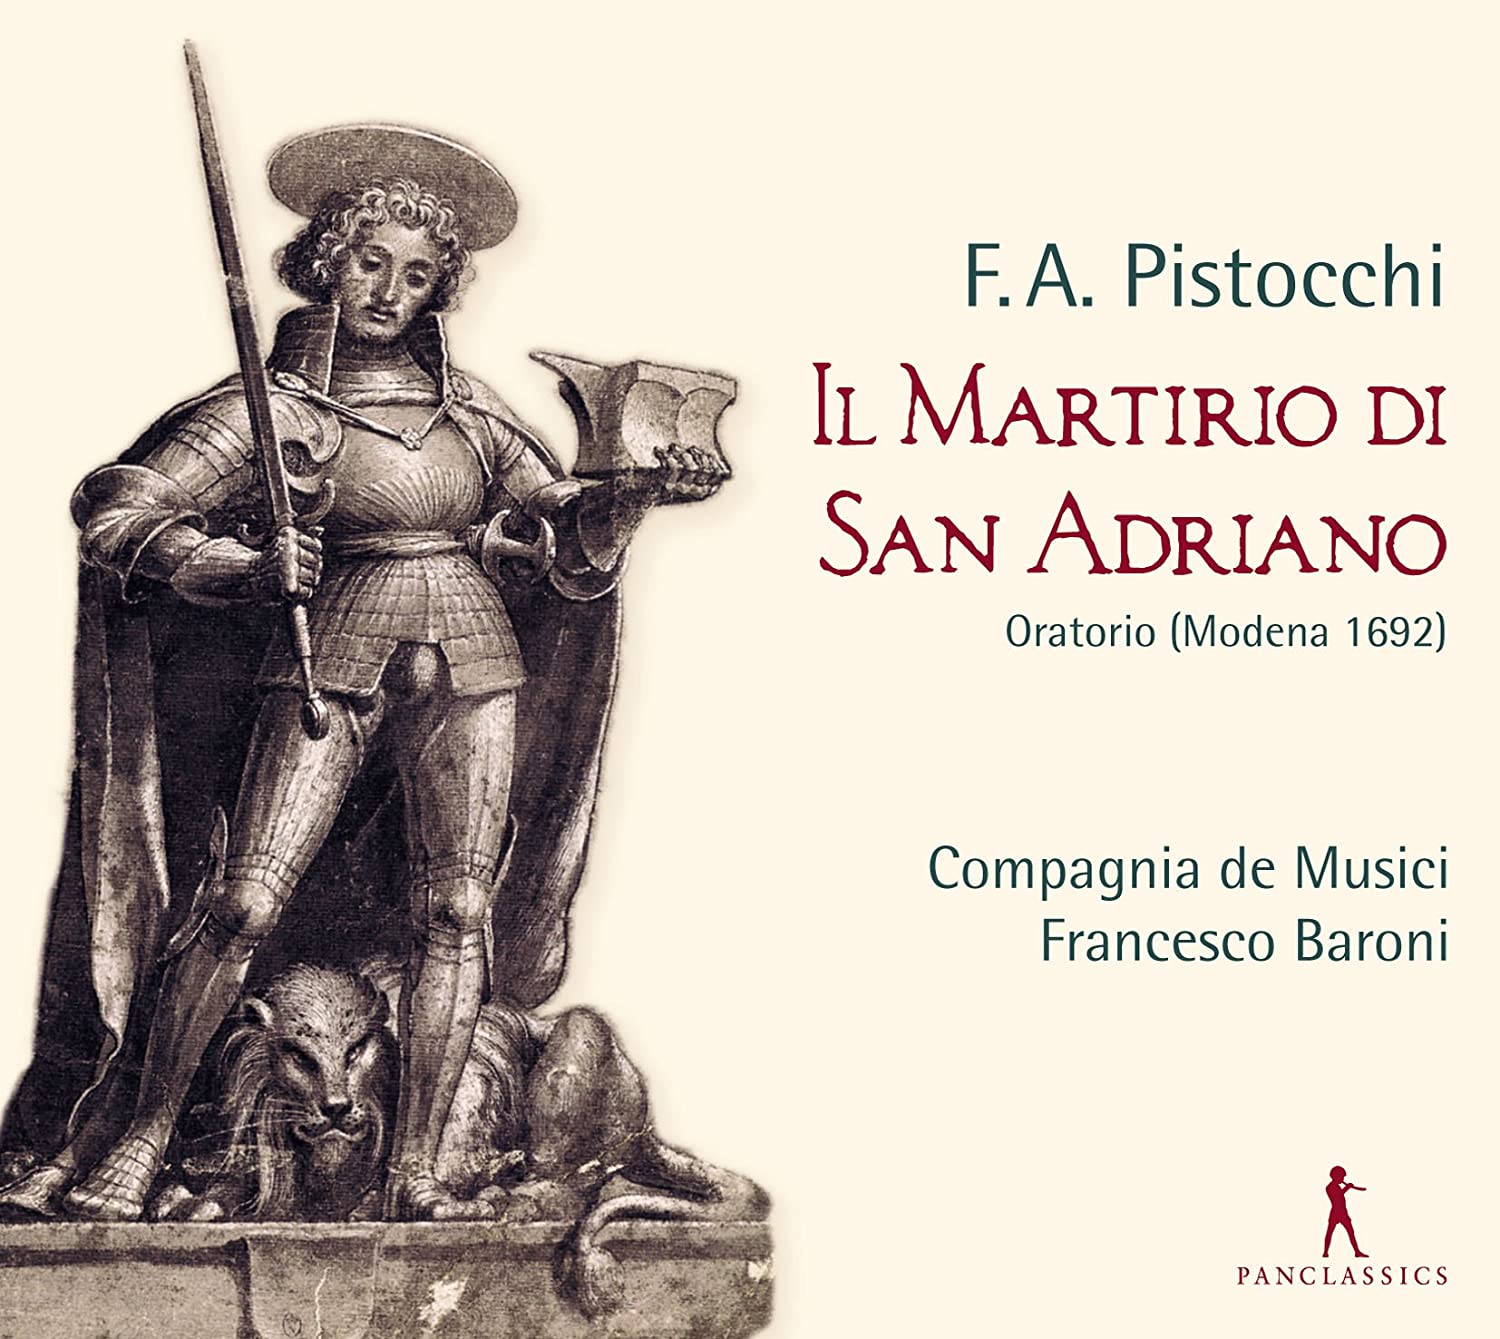 Pistocchi: Il Martirio San Adriano | Compagnia de Musici, Francesco Baroni